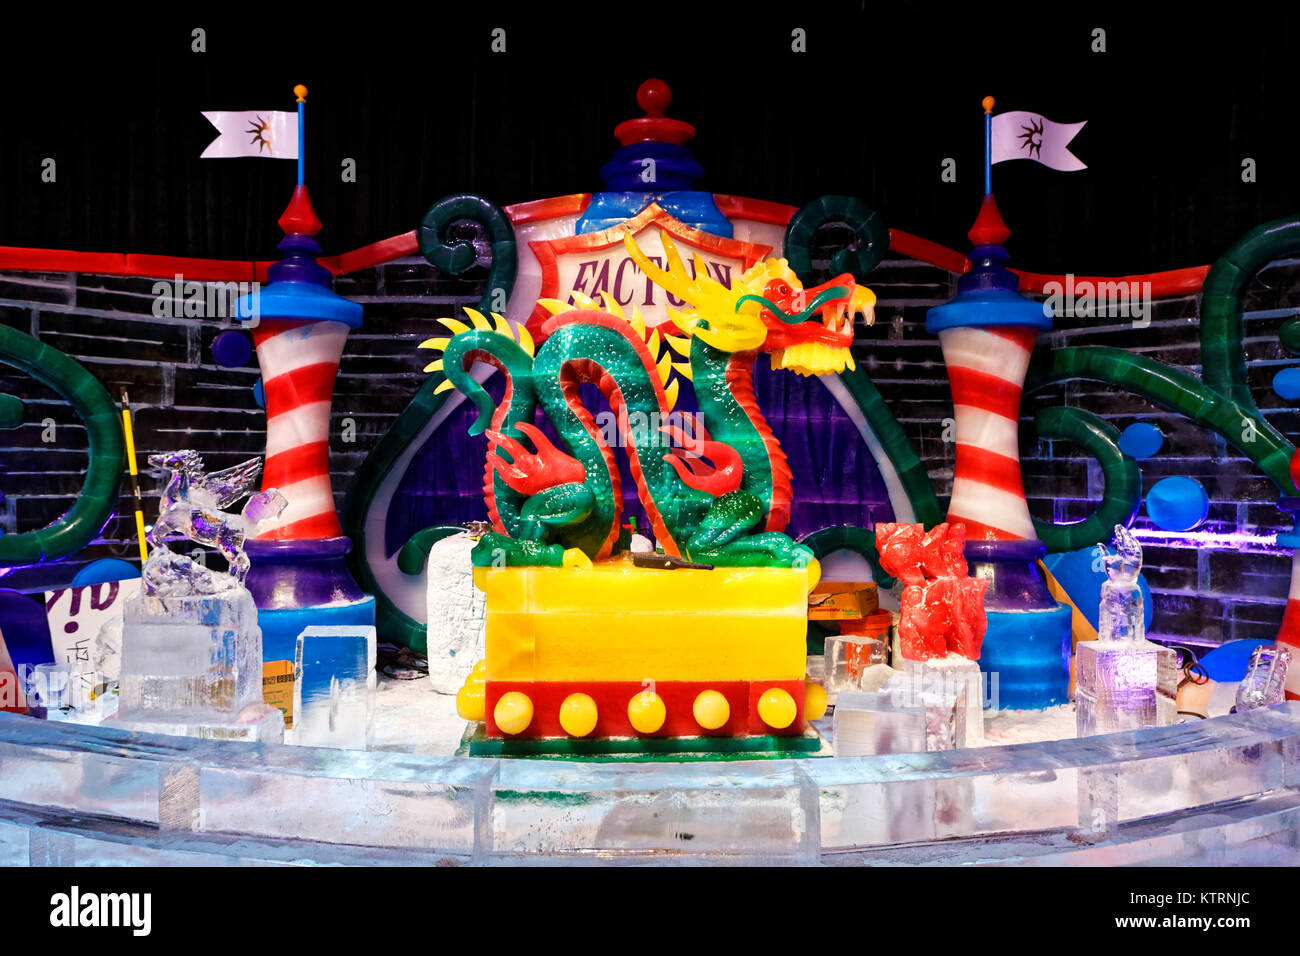 Sculptures de glace à la glace ! Noël autour du monde, événement, Gaylord Palm Resort, Orlando en Floride Banque D'Images